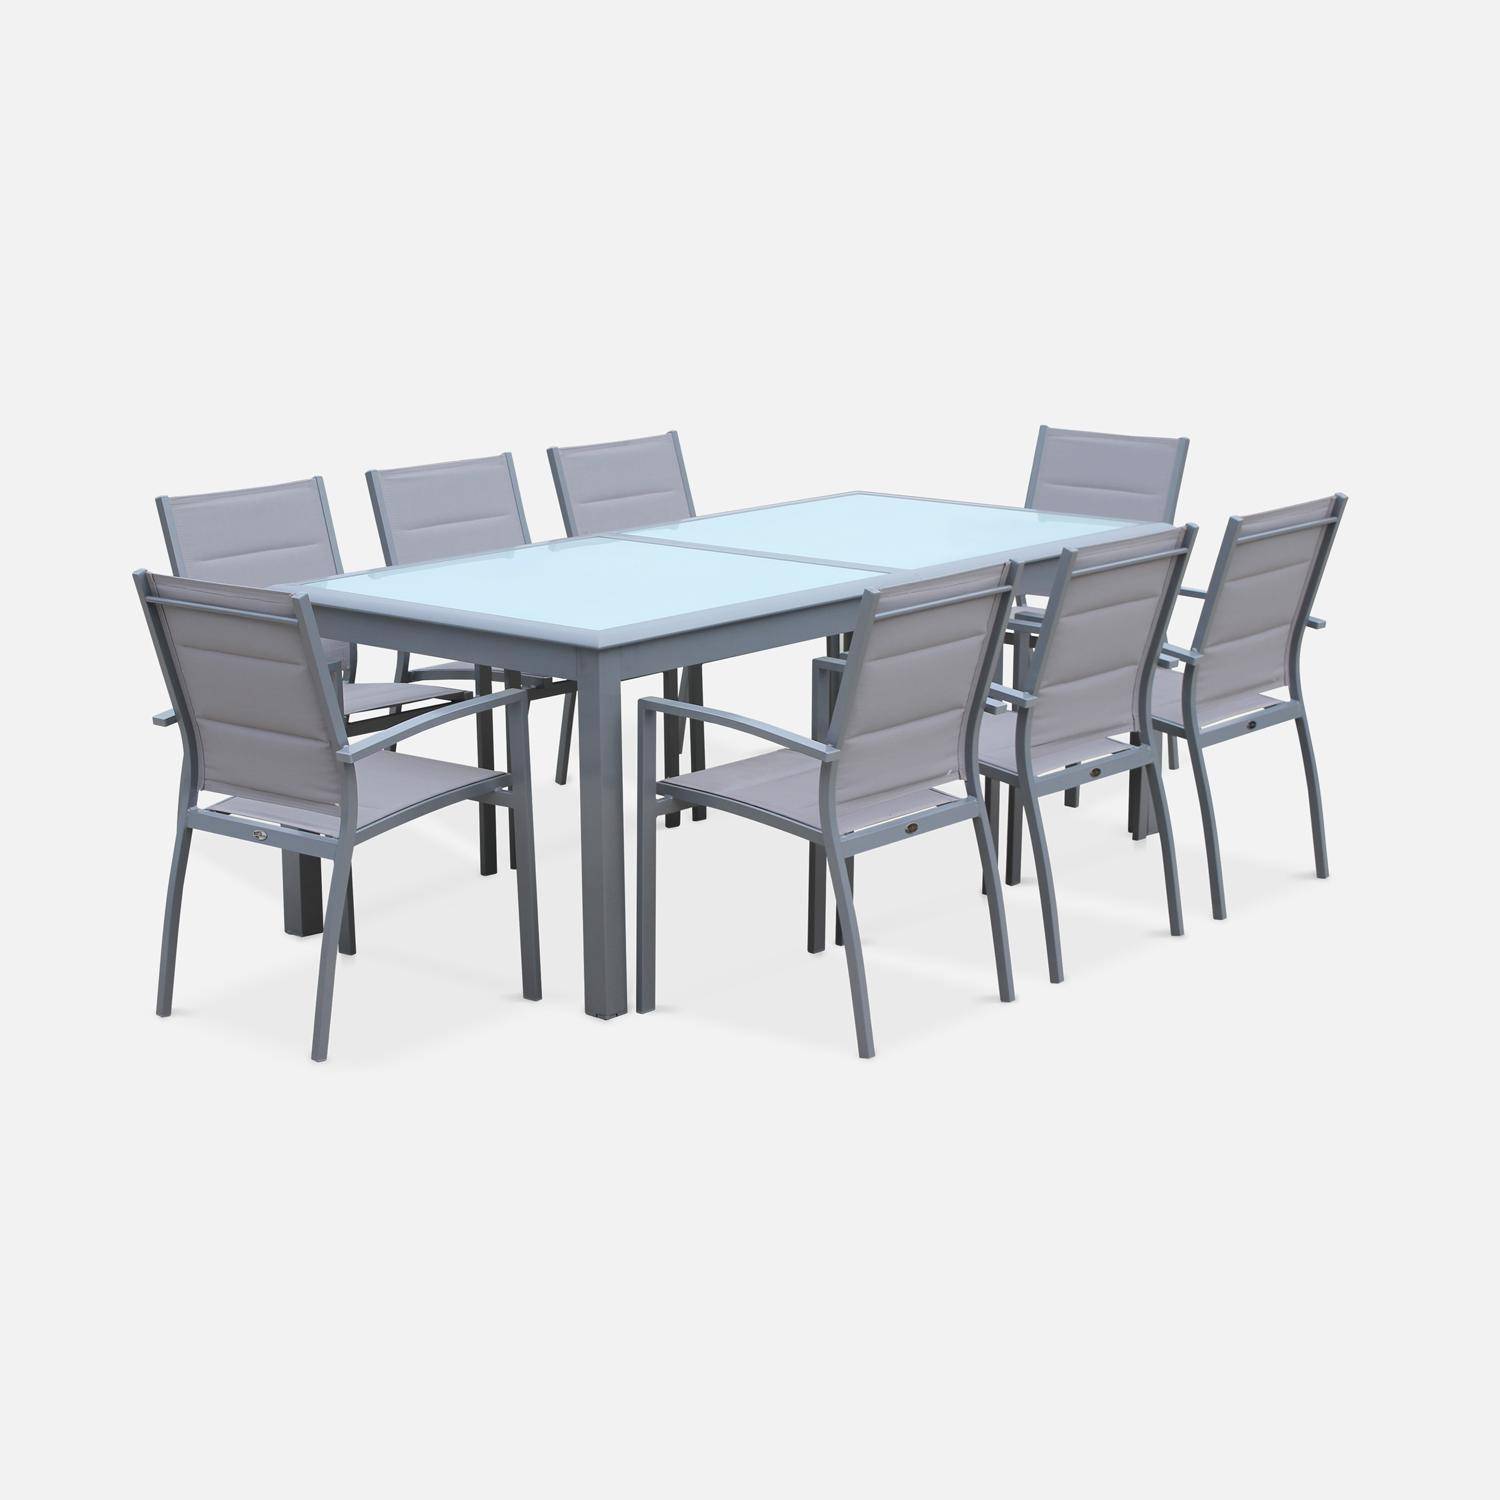 Set da giardino con tavolo allungabile - modello: Philadelphie, colore: Grigio chiaro - Tavolo in alluminio, dimensioni: 200/300cm, ripiano in vetro, prolunga e 8 poltrone in textilene Photo2